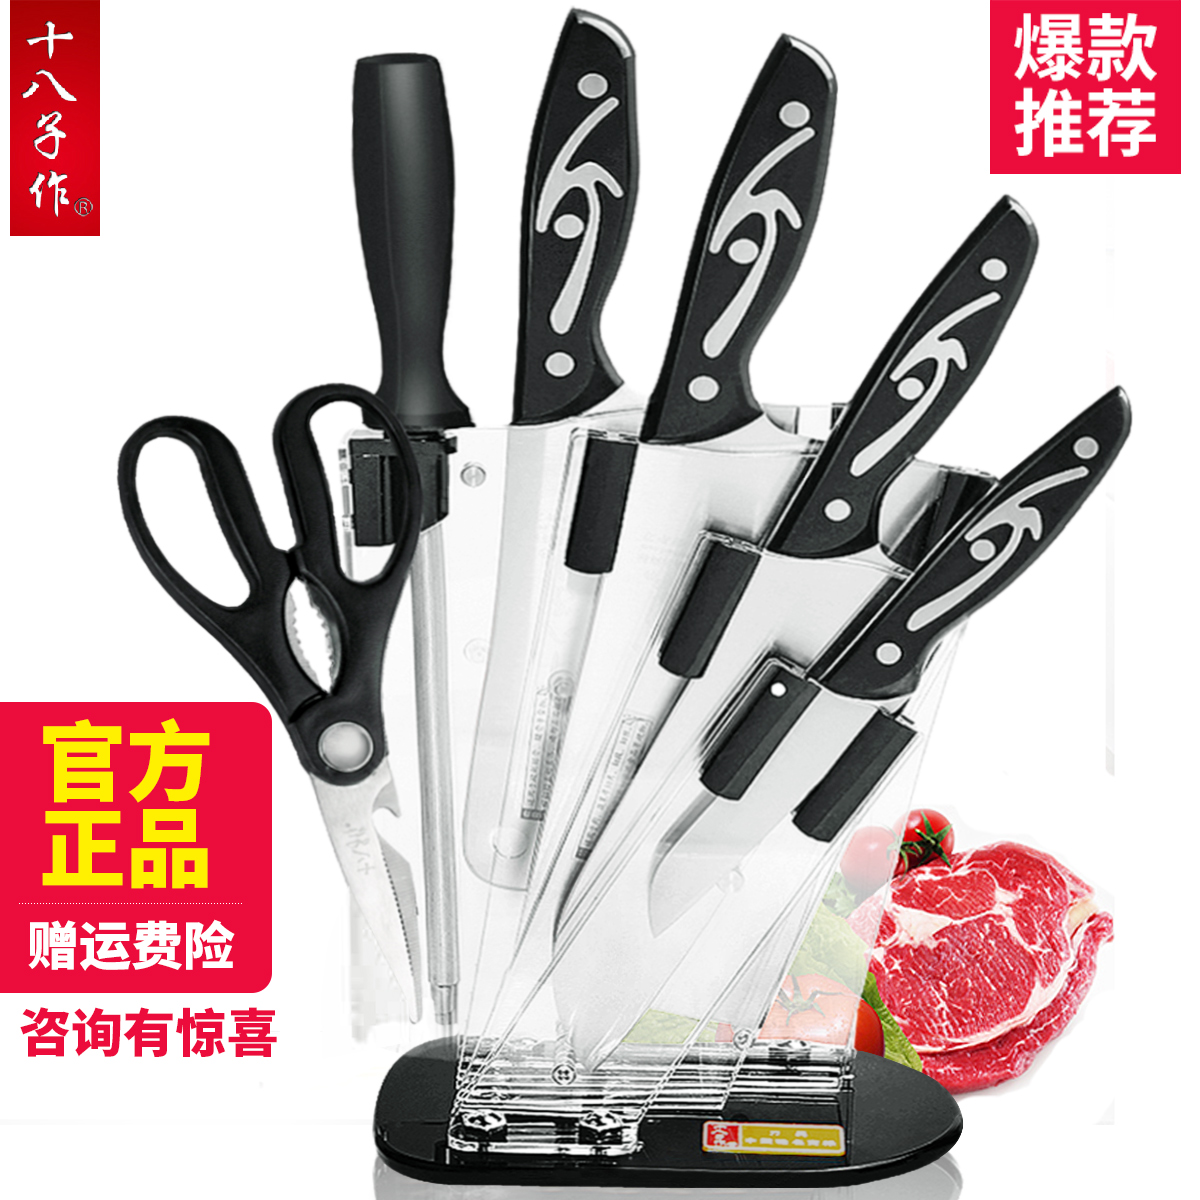 十八子作菜刀套装家用全套组合刀具套装厨房不锈钢套刀厨具切片刀